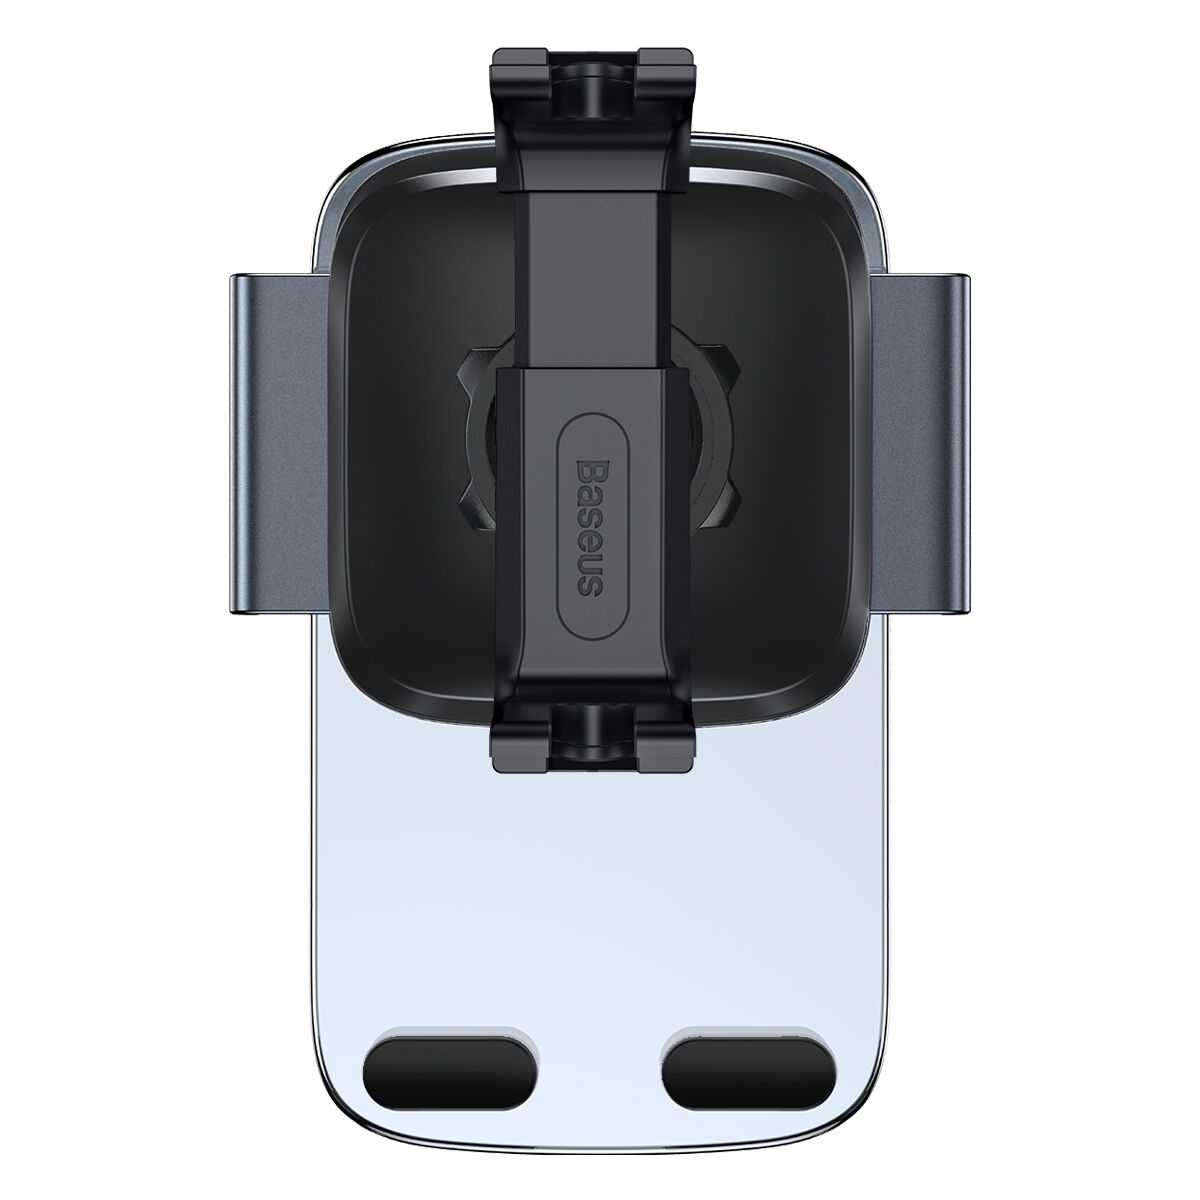 Kép 5/15 - Baseus autós telefon tartó, Easy Control Clamp Holder (kerek szellőzőrácsra szerelhető), 4.7 - 6.7 inchig, fekete (SUYK000201)